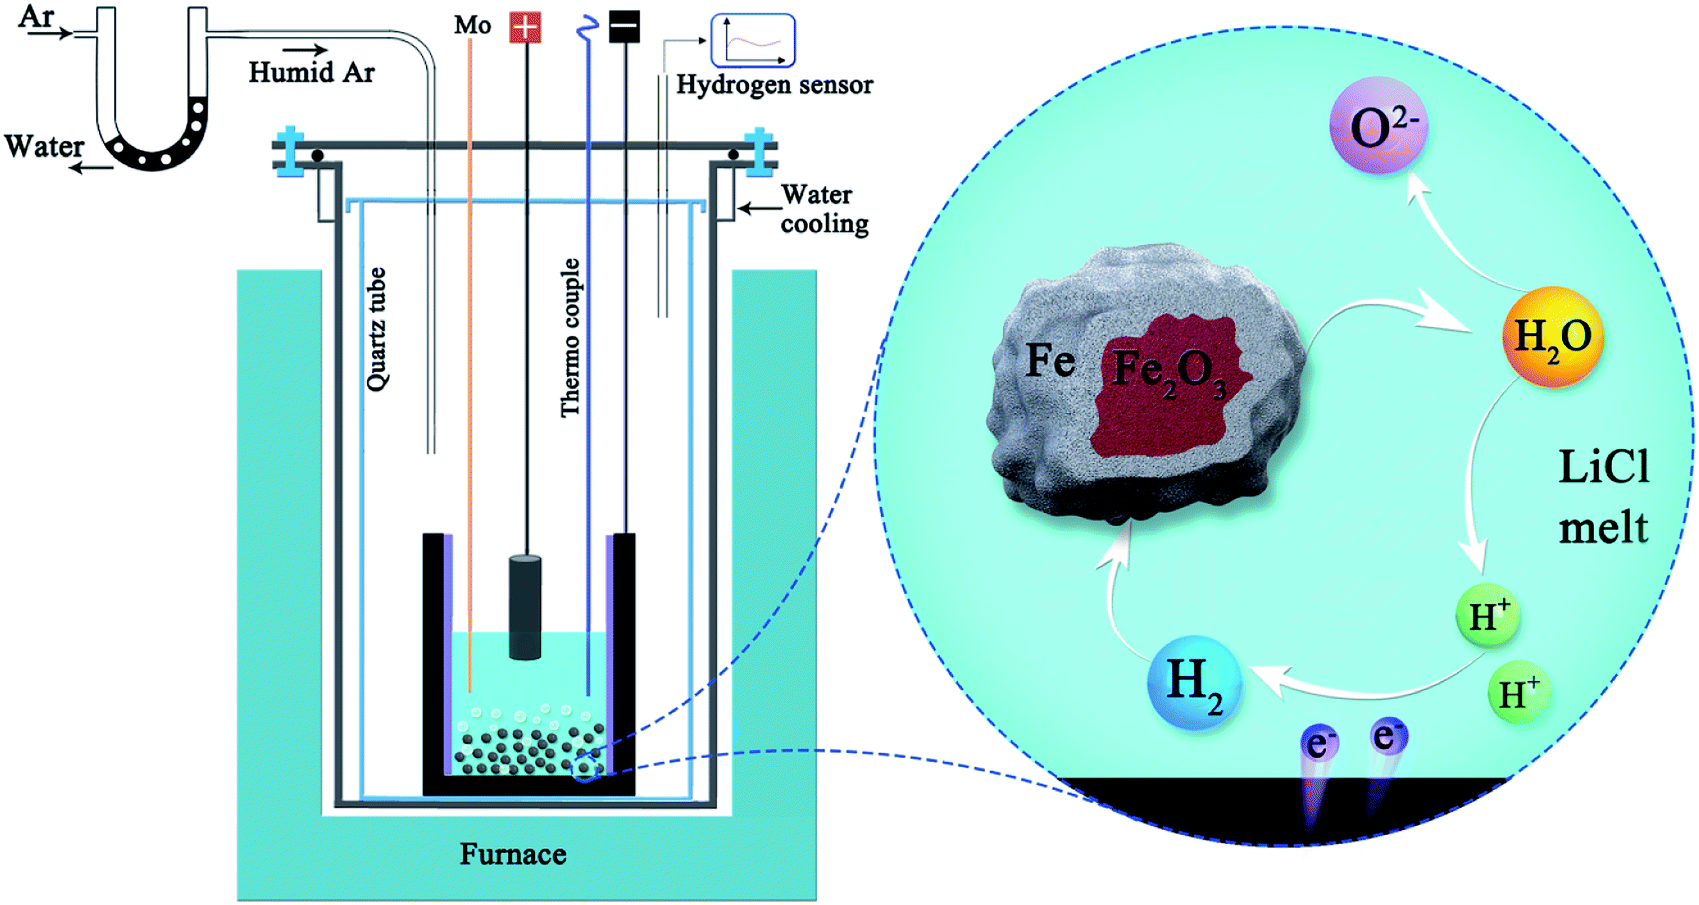 Clean production and utilisation of hydrogen in molten salts - RSC Advances  (RSC Publishing) DOI:10.1039/D0RA06575G